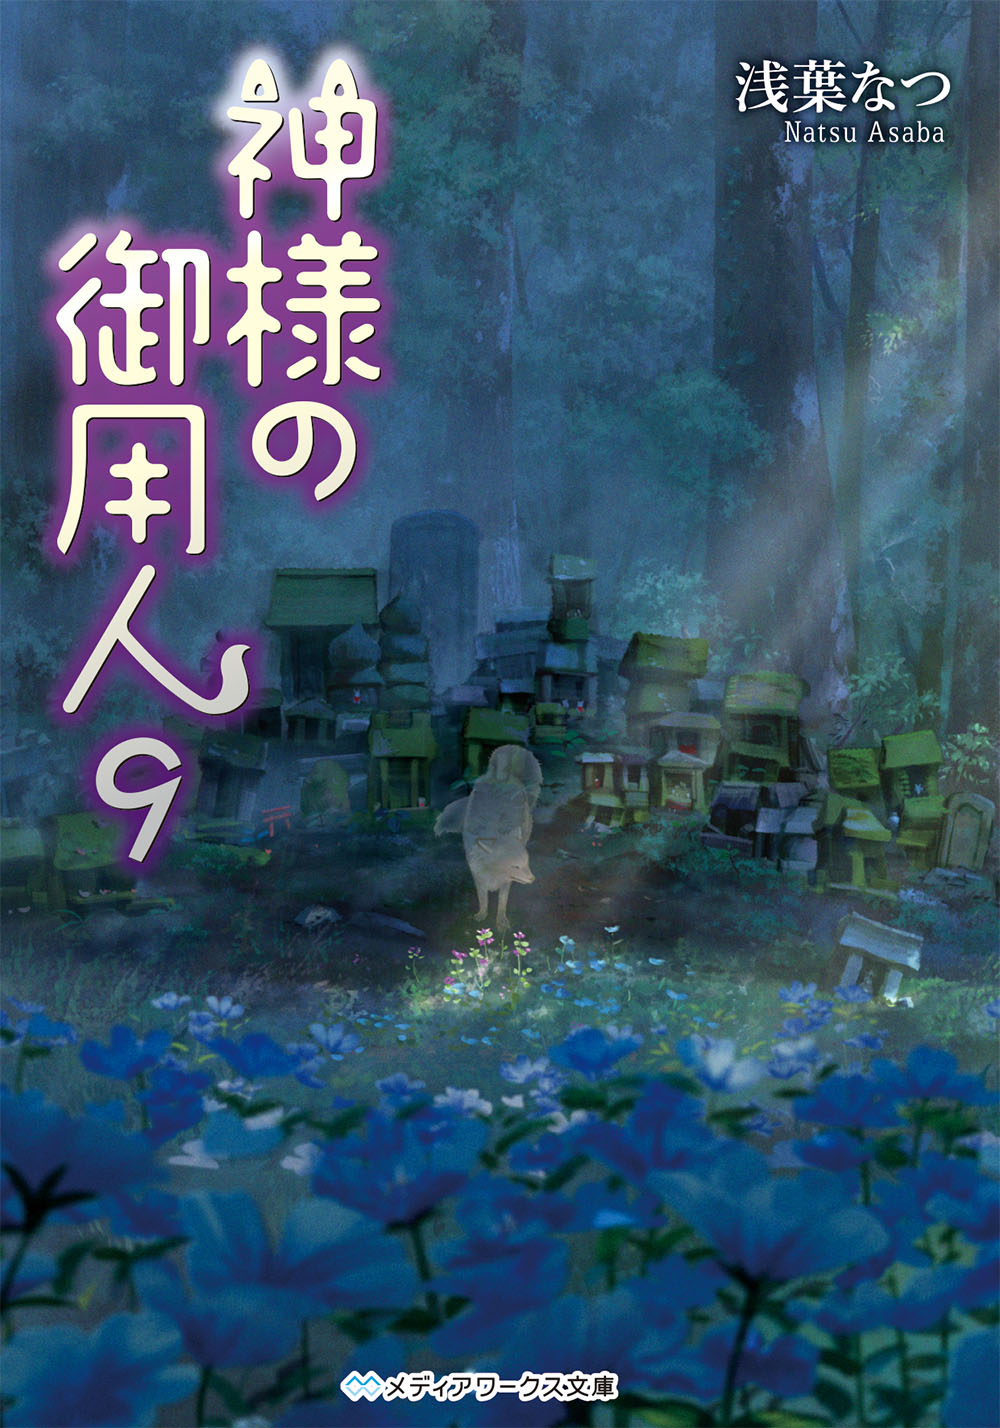 Kadokawa公式ショップ 神様の御用人９ 本 カドカワストア オリジナル特典 本 関連グッズ Blu Ray Dvd Cd